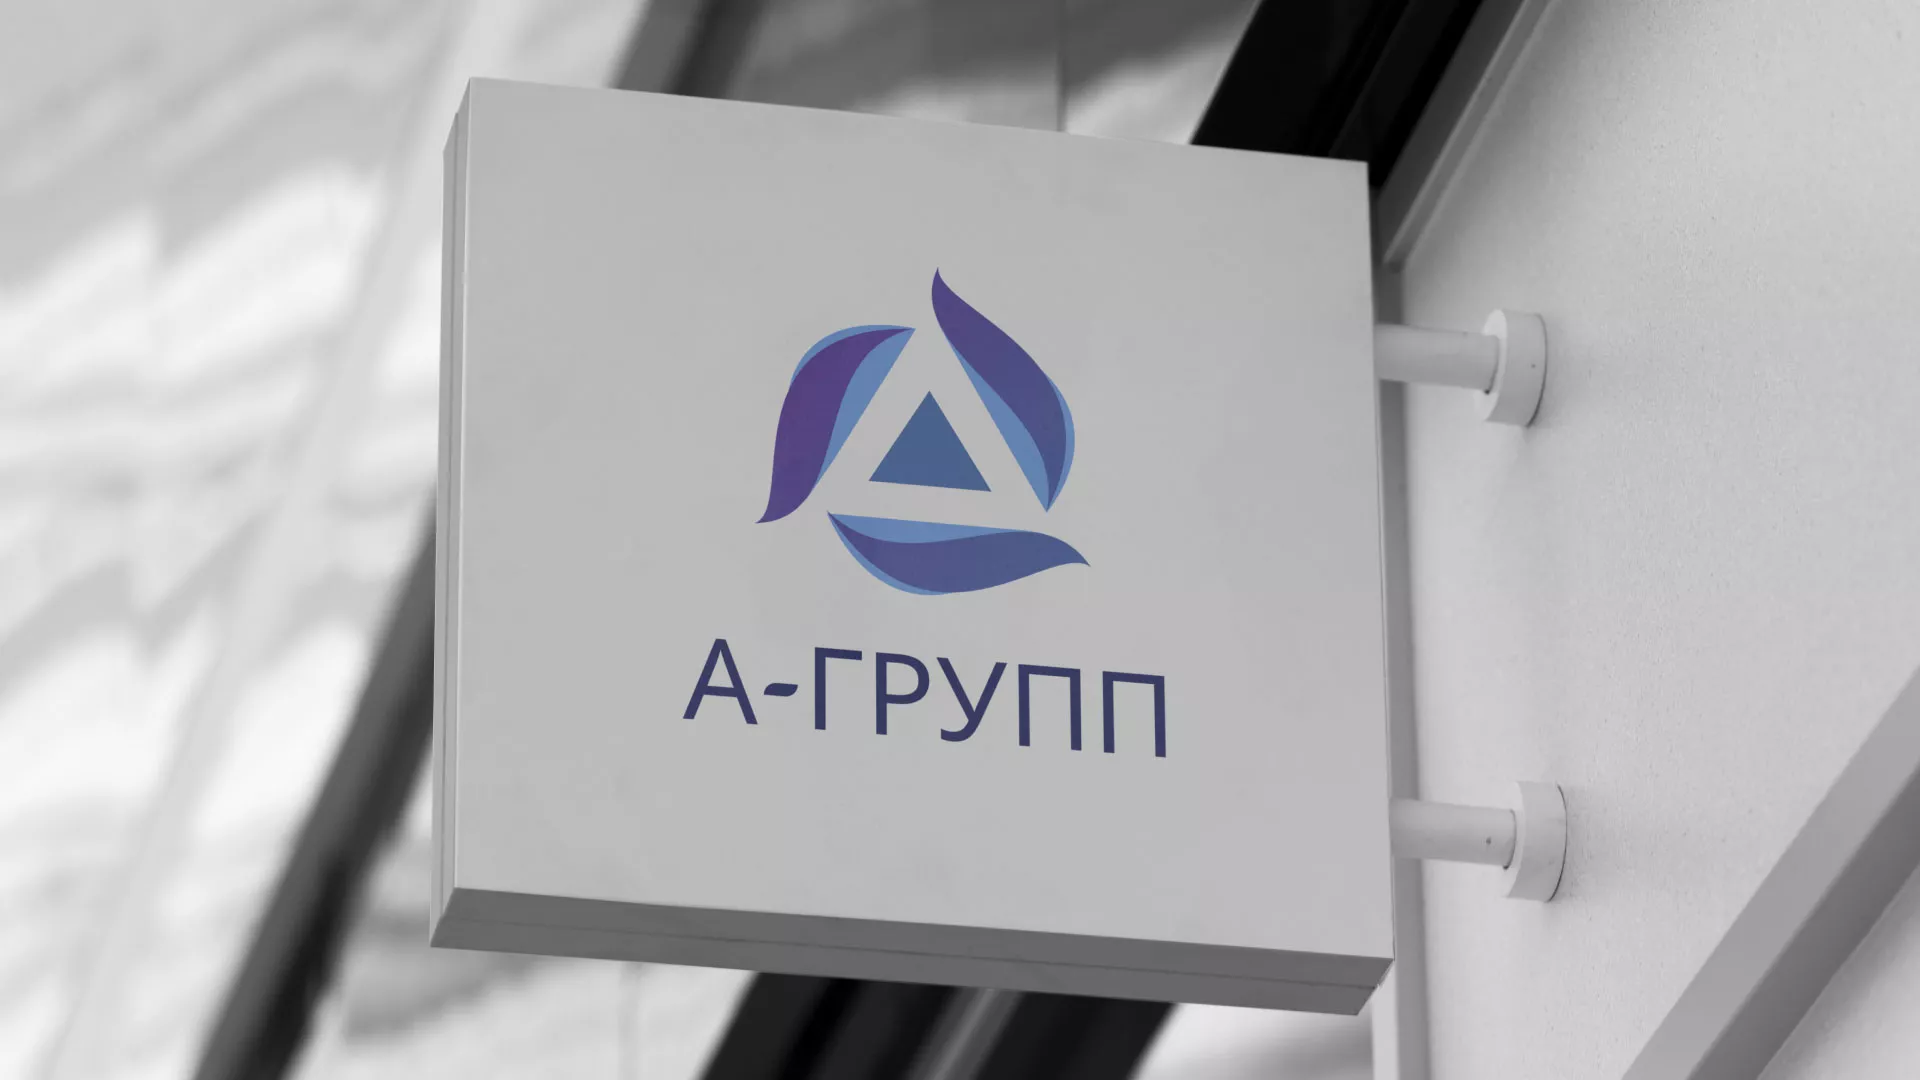 Создание логотипа компании «А-ГРУПП» в Болгаре